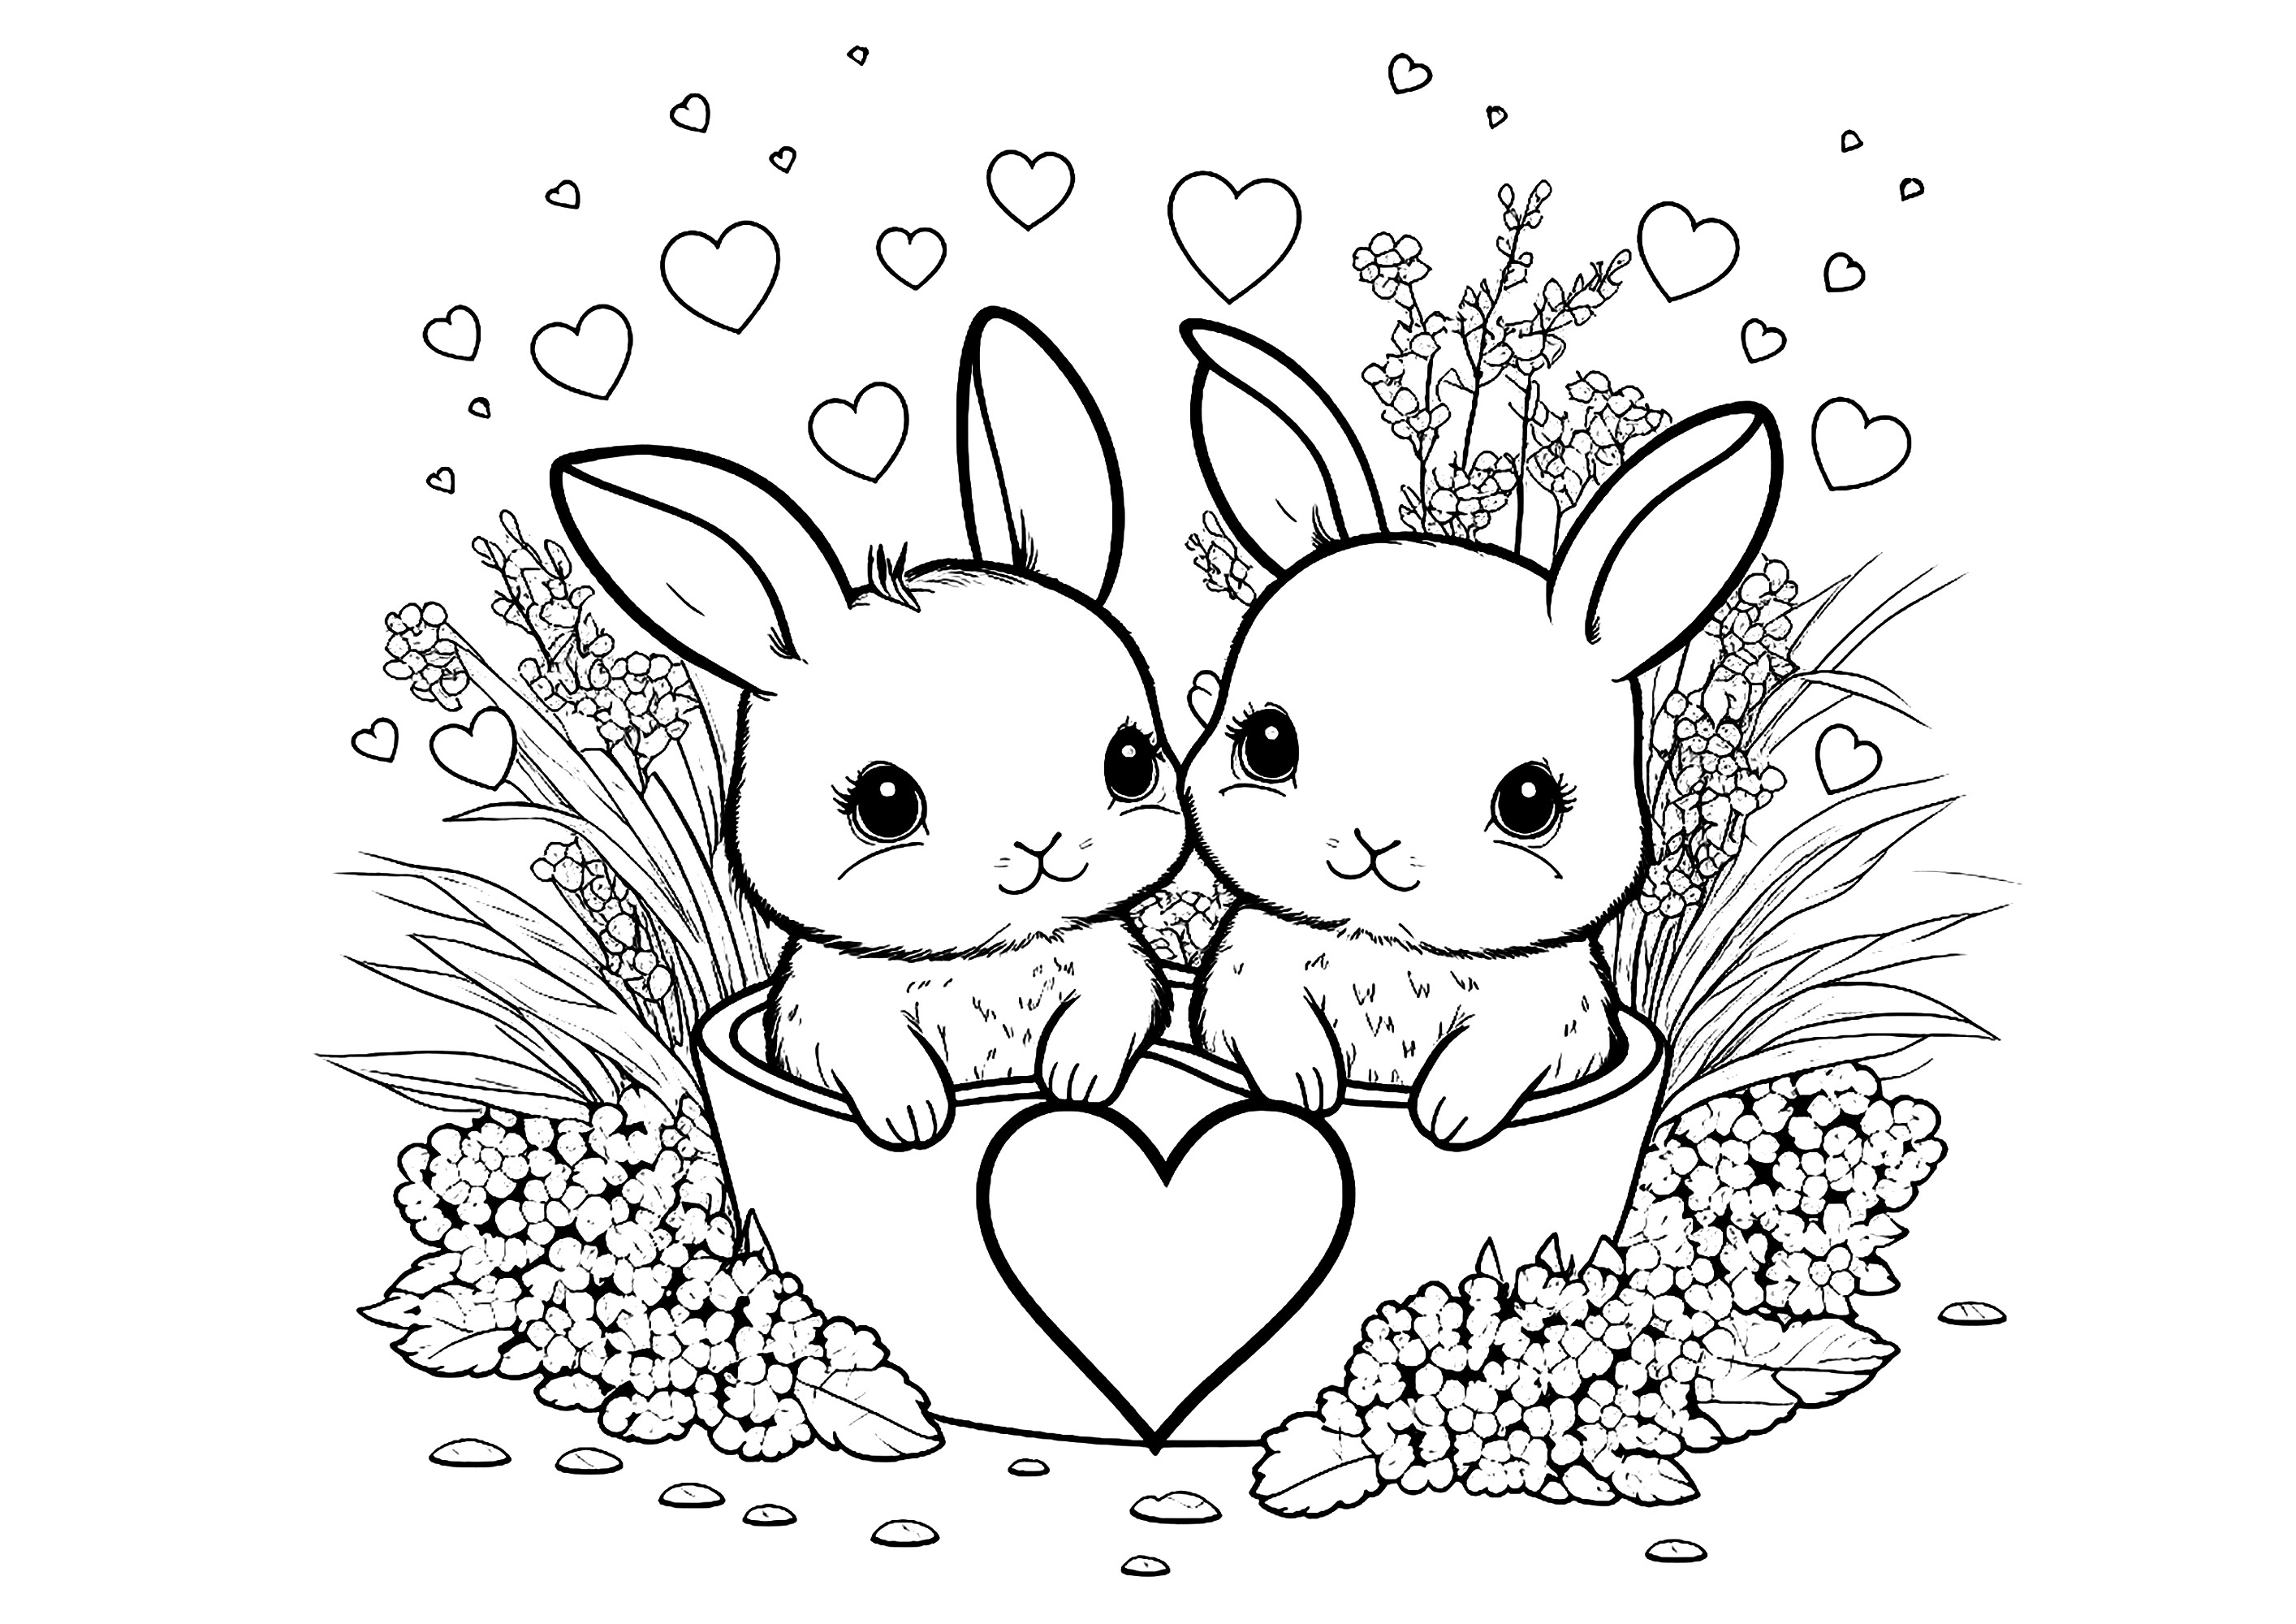 Deux petits lapins à colorier, avec un joli coeur au milieu des deux